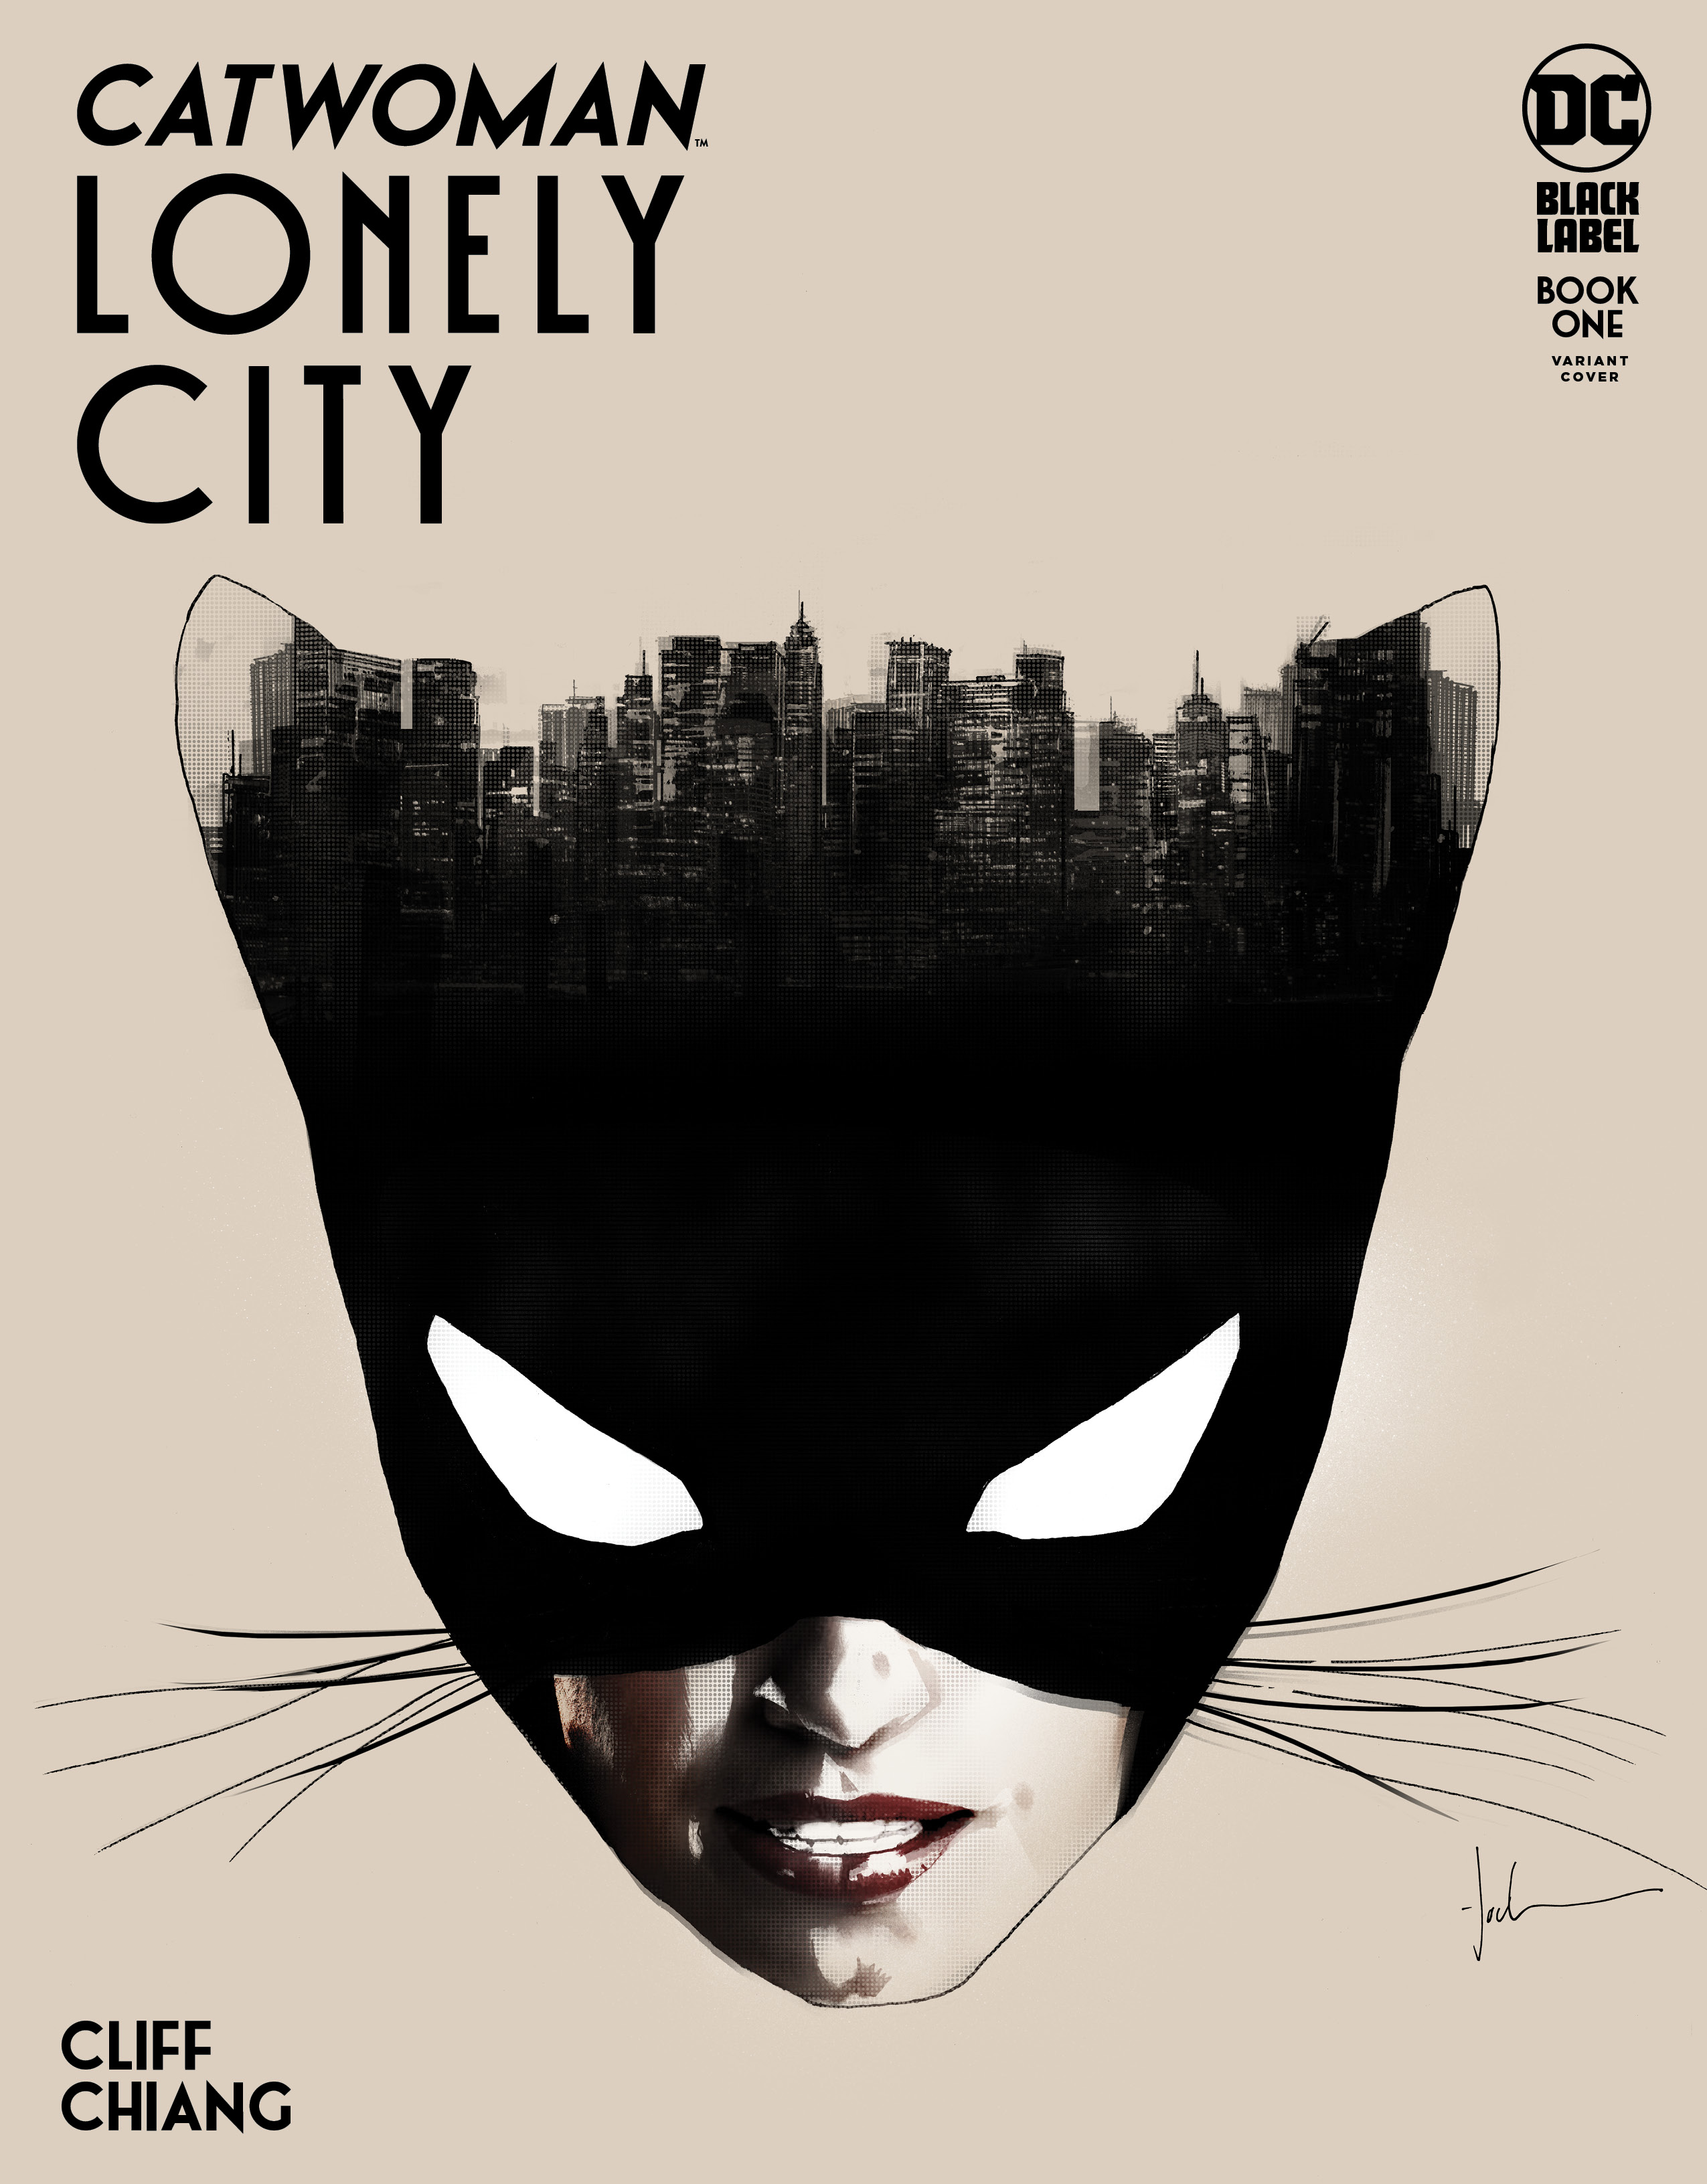 Catwoman: Lonely City #1 varyant kapağı